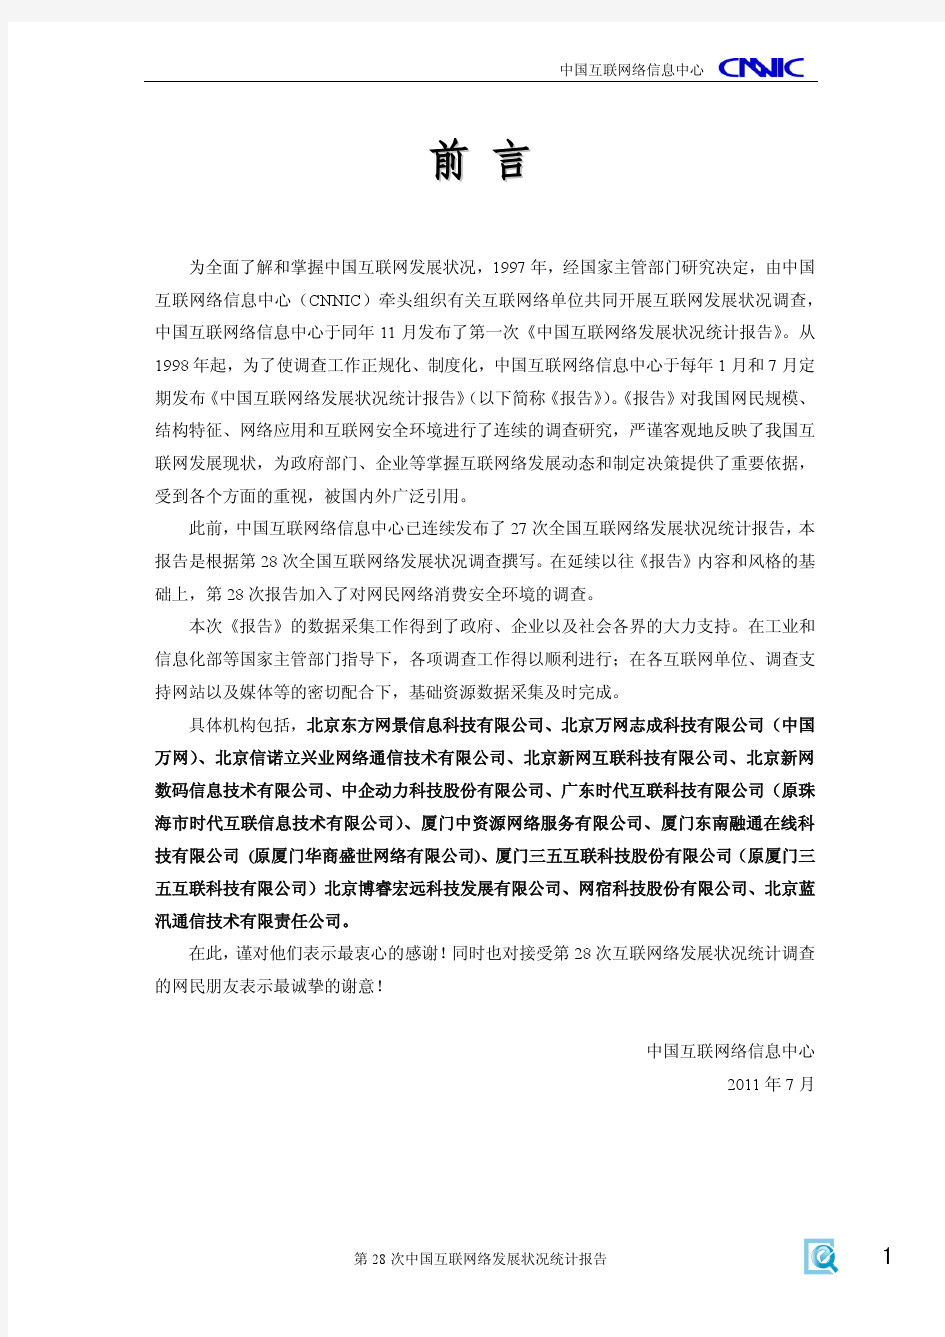 CNNIC第28次中国互联网络发展状况统计报告 (2)